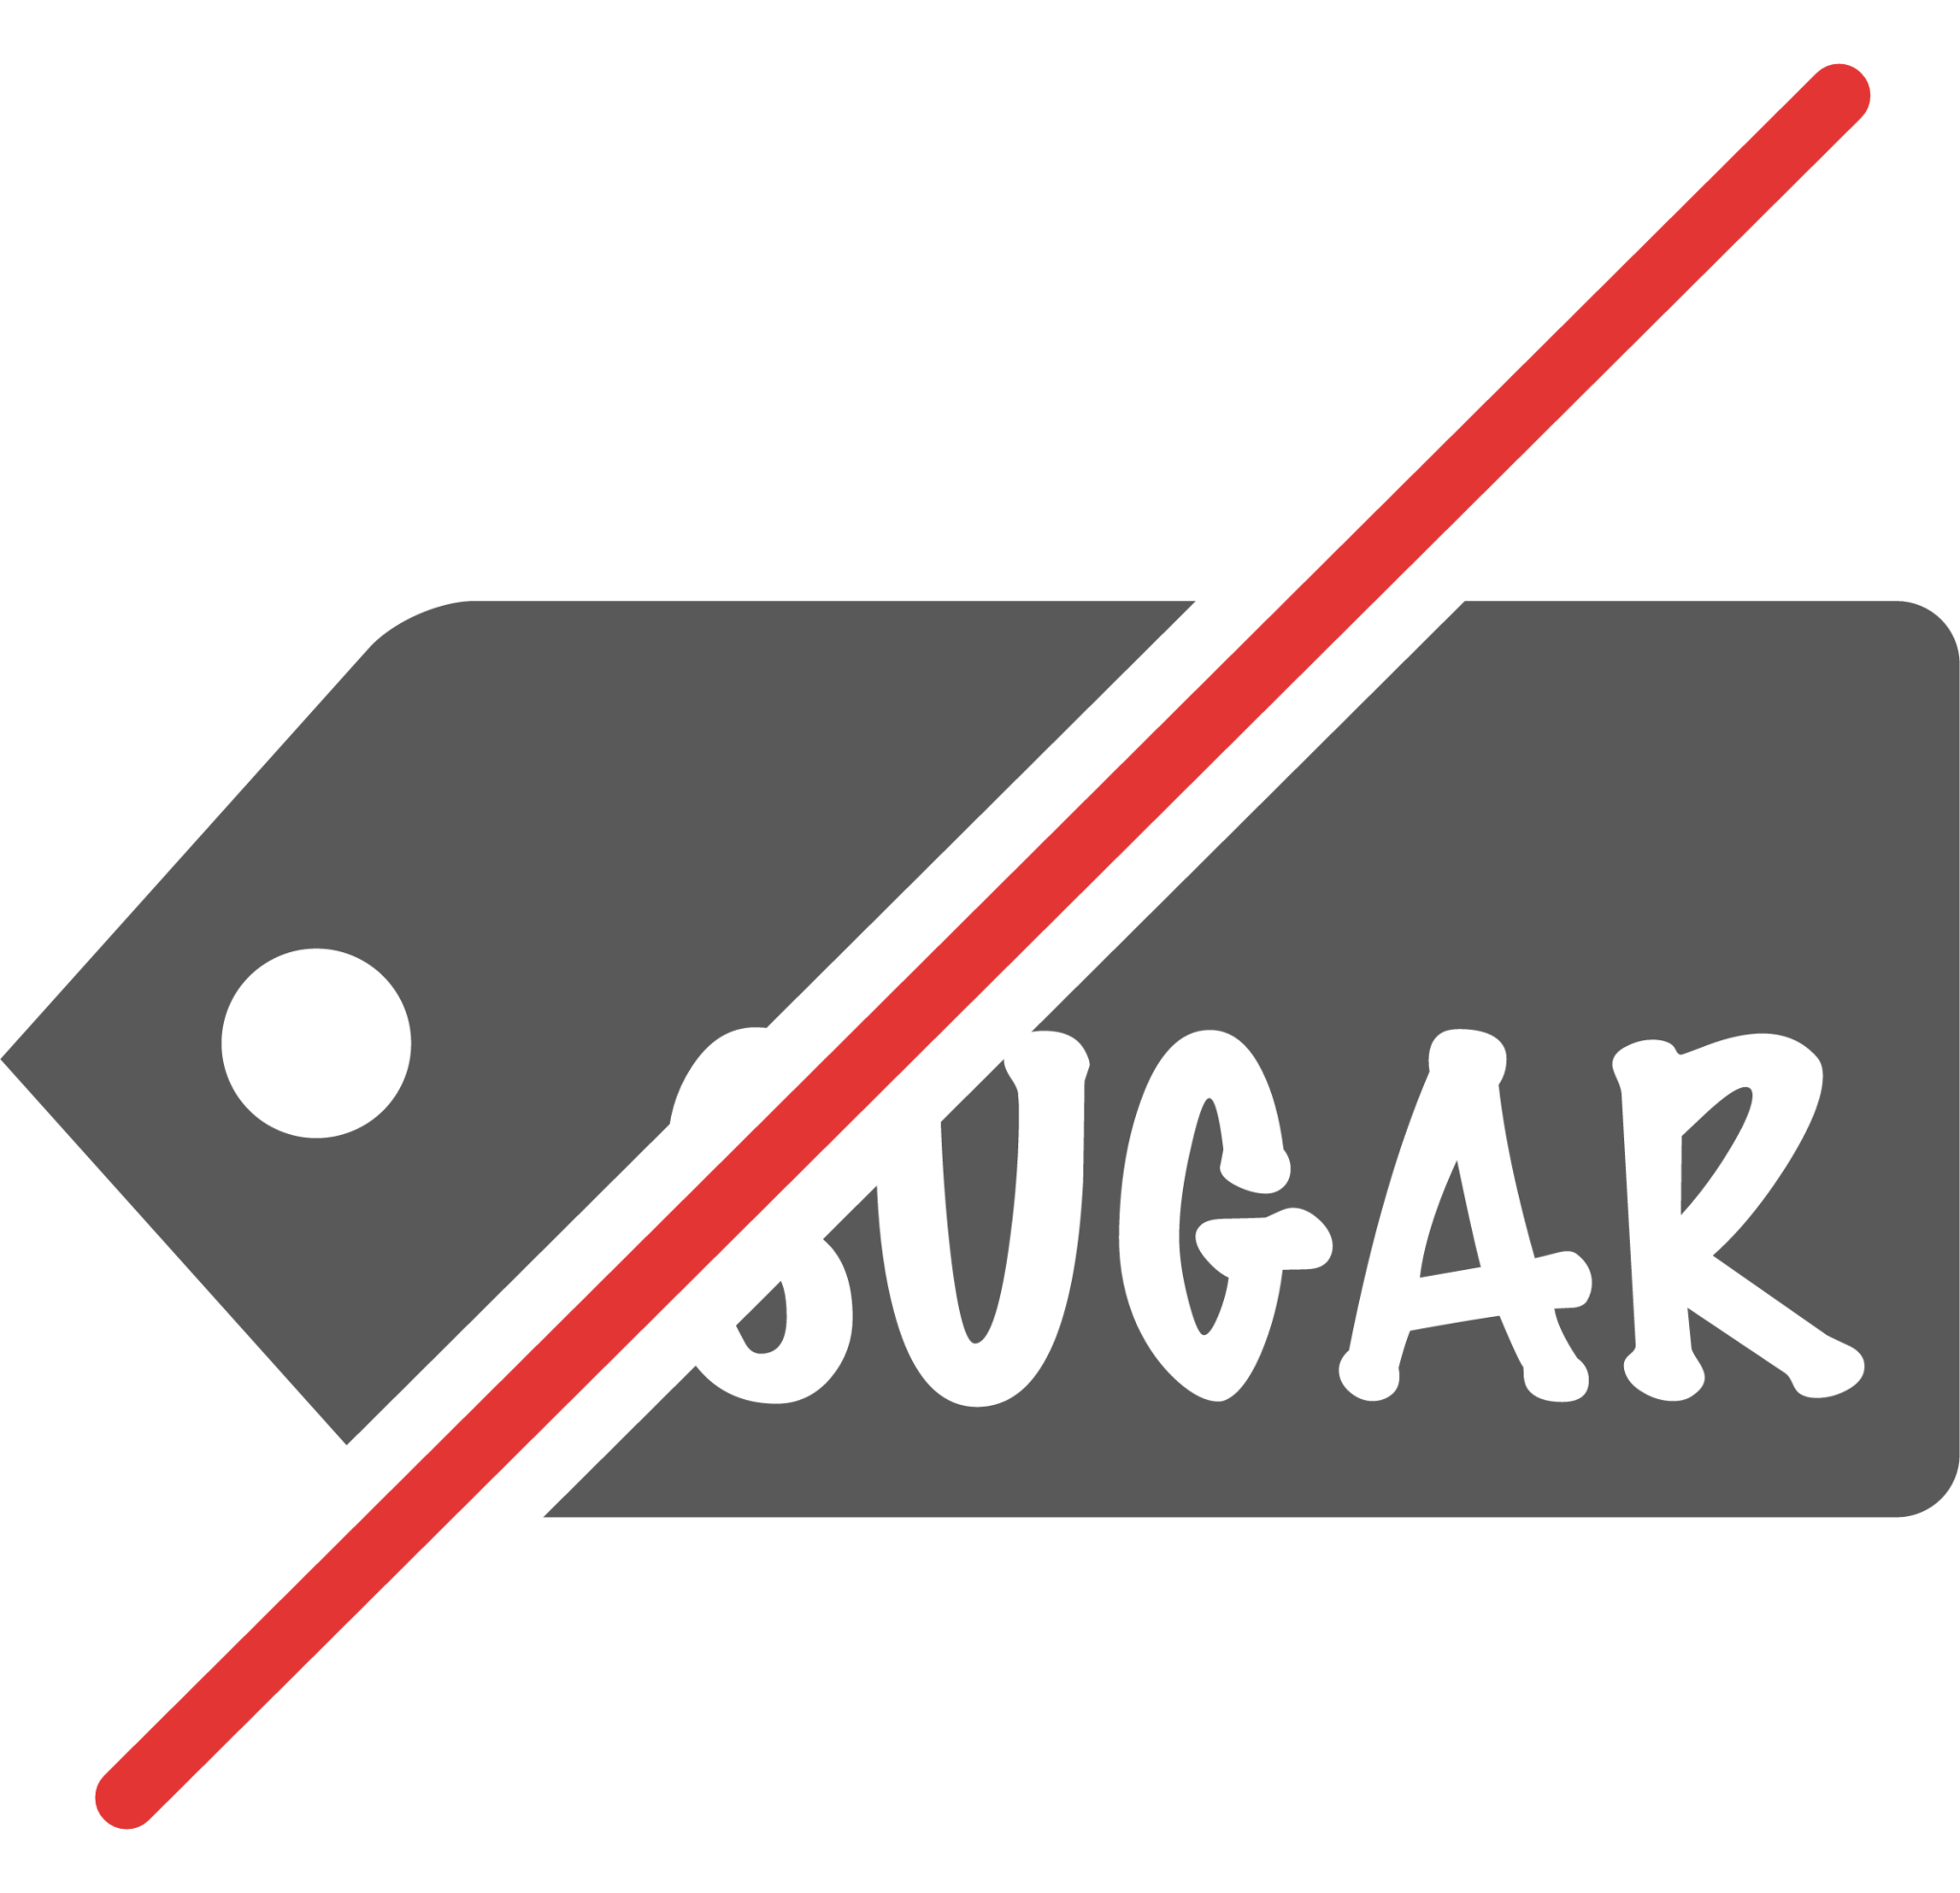 no sugar icon